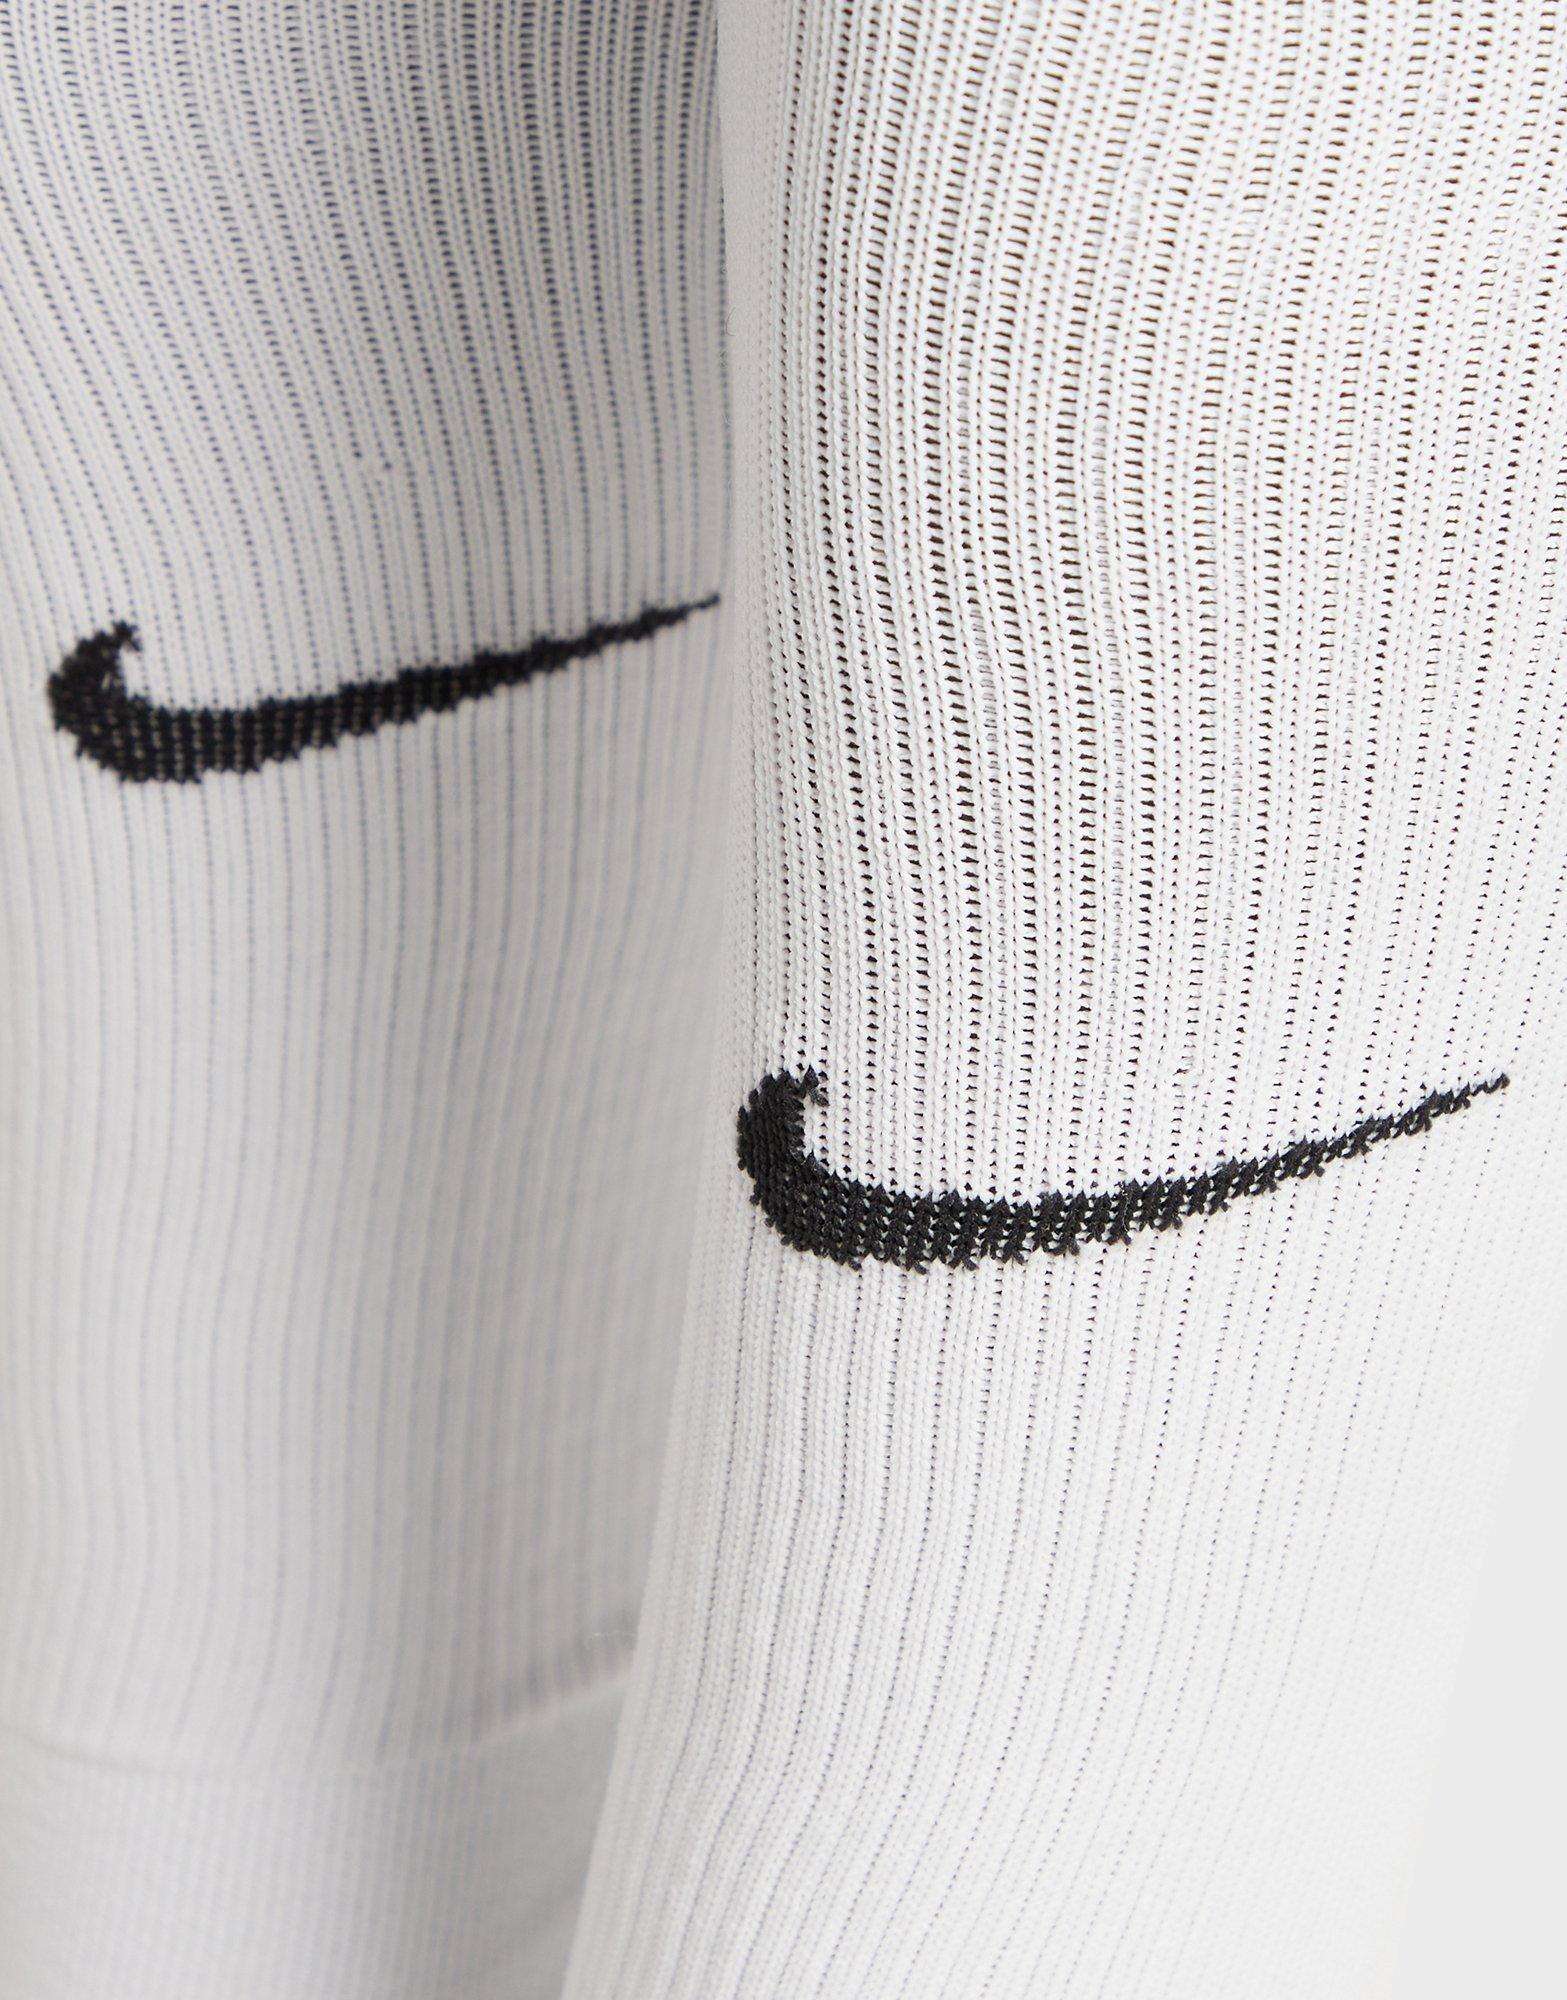 White Nike Squad Leg Sleeves - JD Sports Ireland